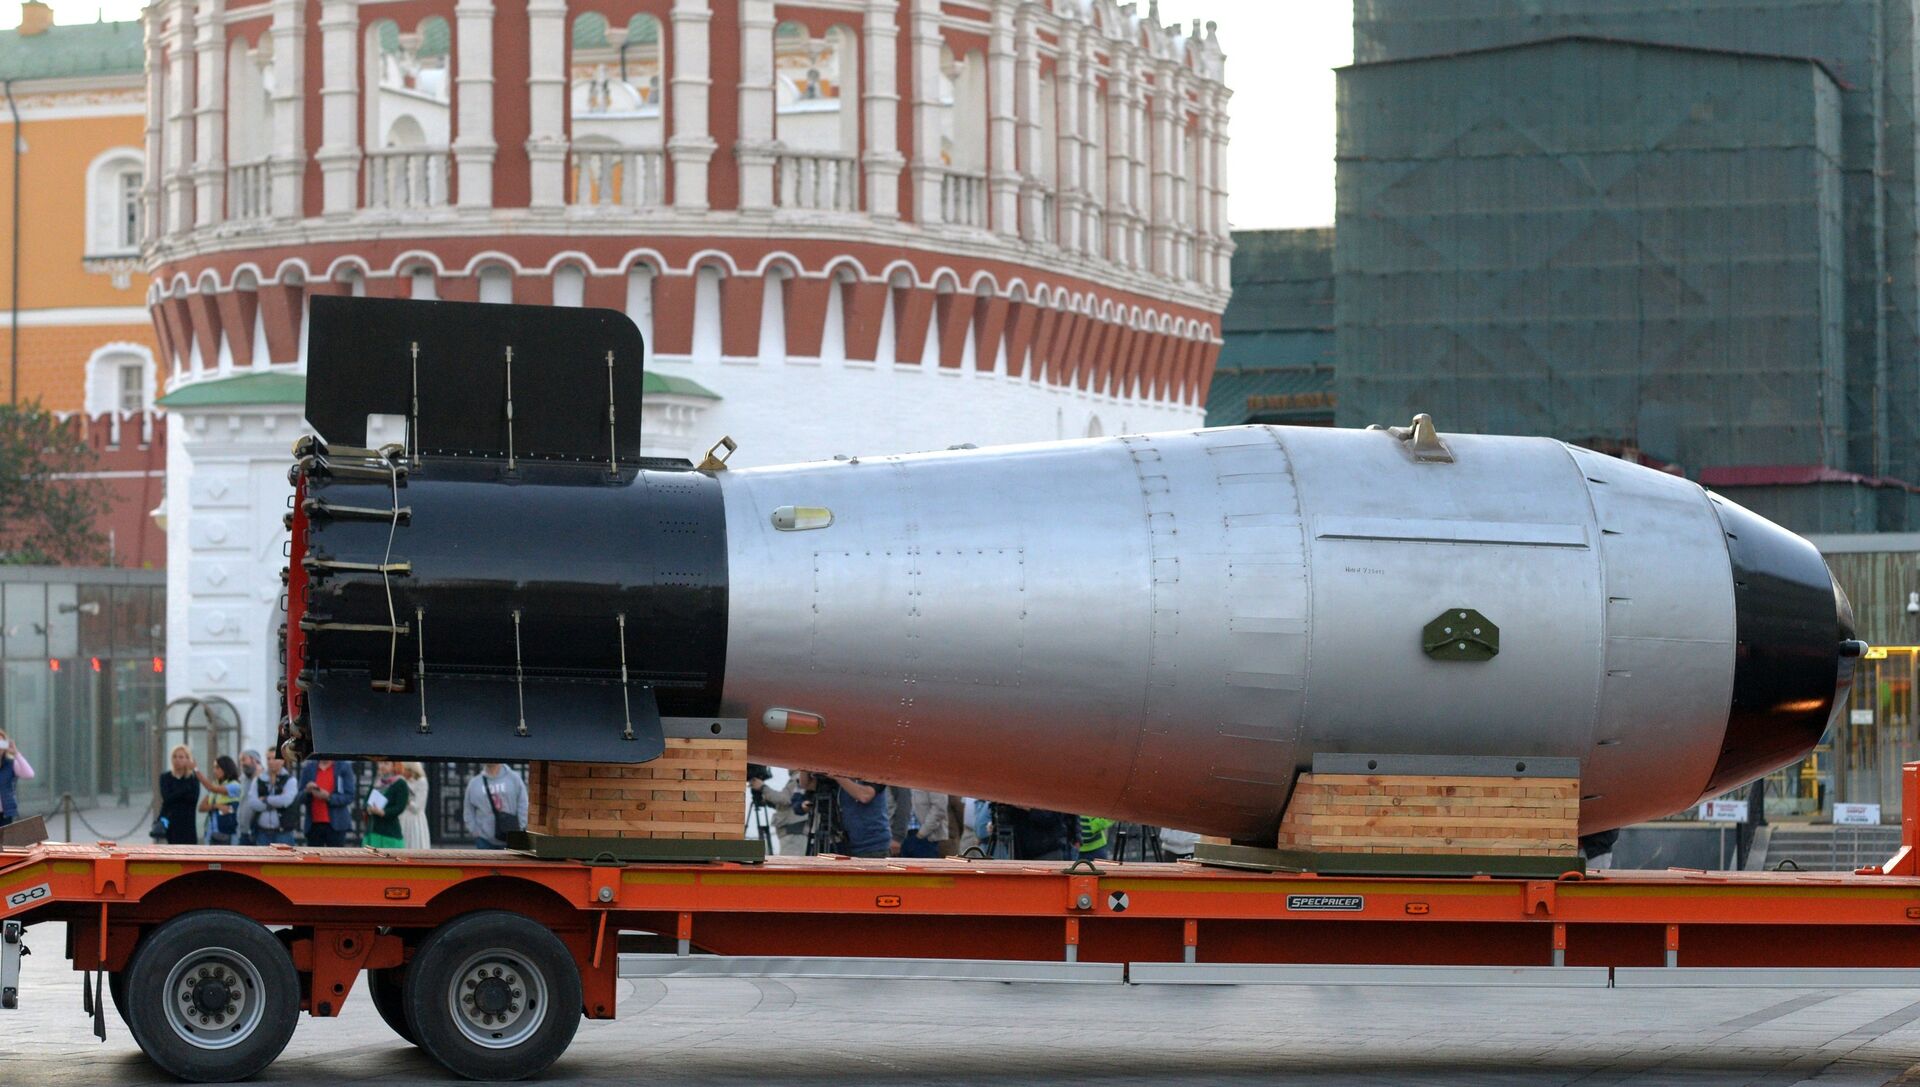 Копия термоядерной Царь-бомбы доставлена в Москву - РИА Новости, 1920, 09.01.2021